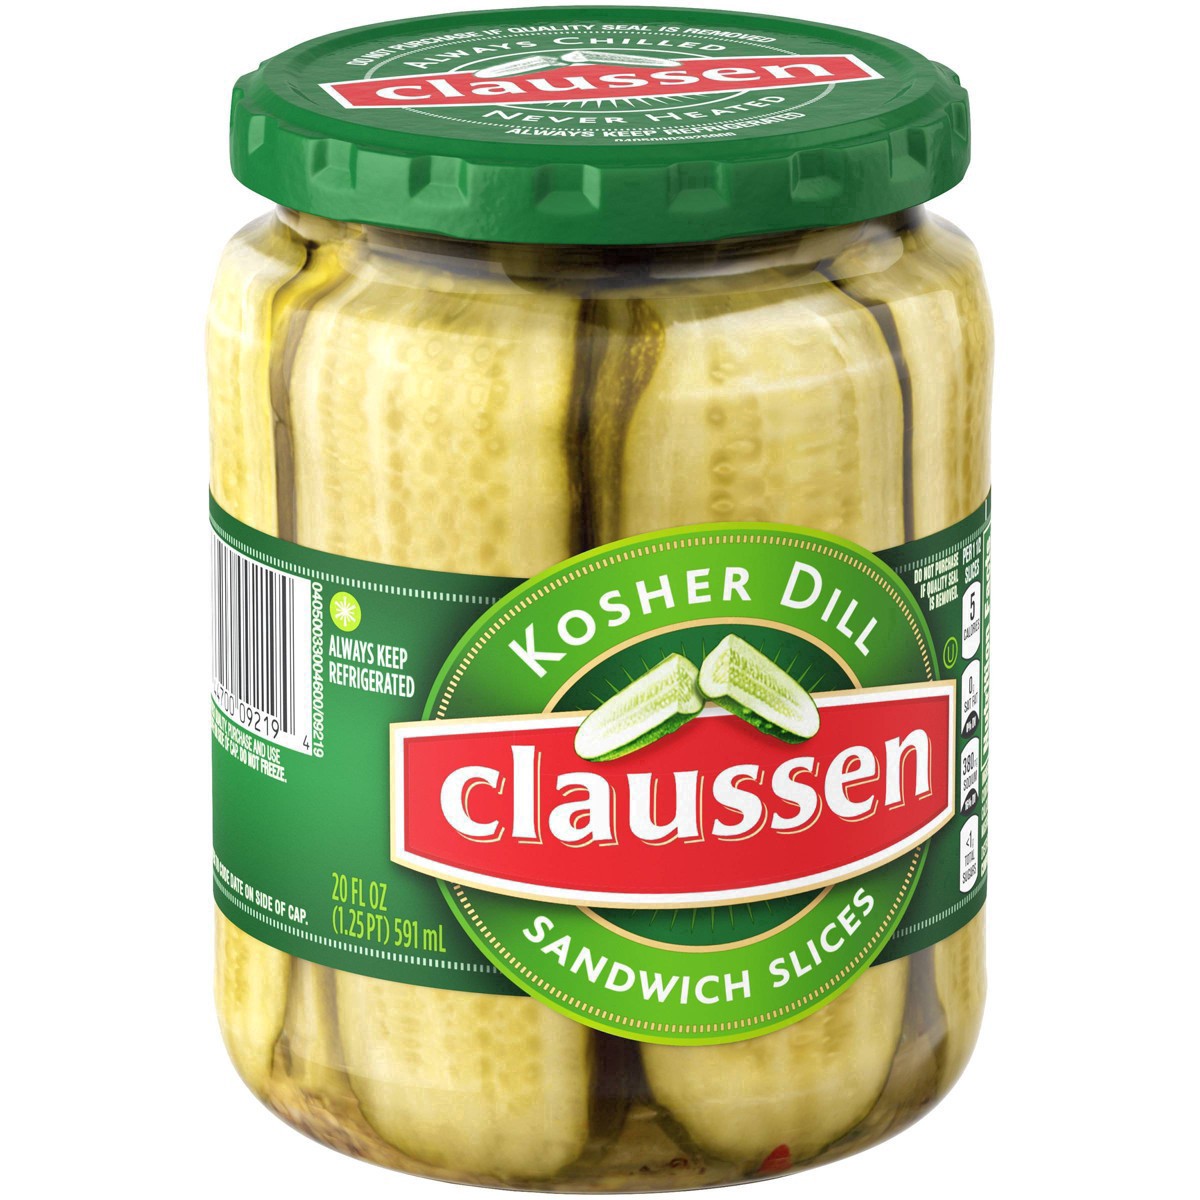 slide 51 of 144, Claussen Kosher Dill Pickle Sandwich Slices, 20 fl. oz. Jar, 20 fl oz